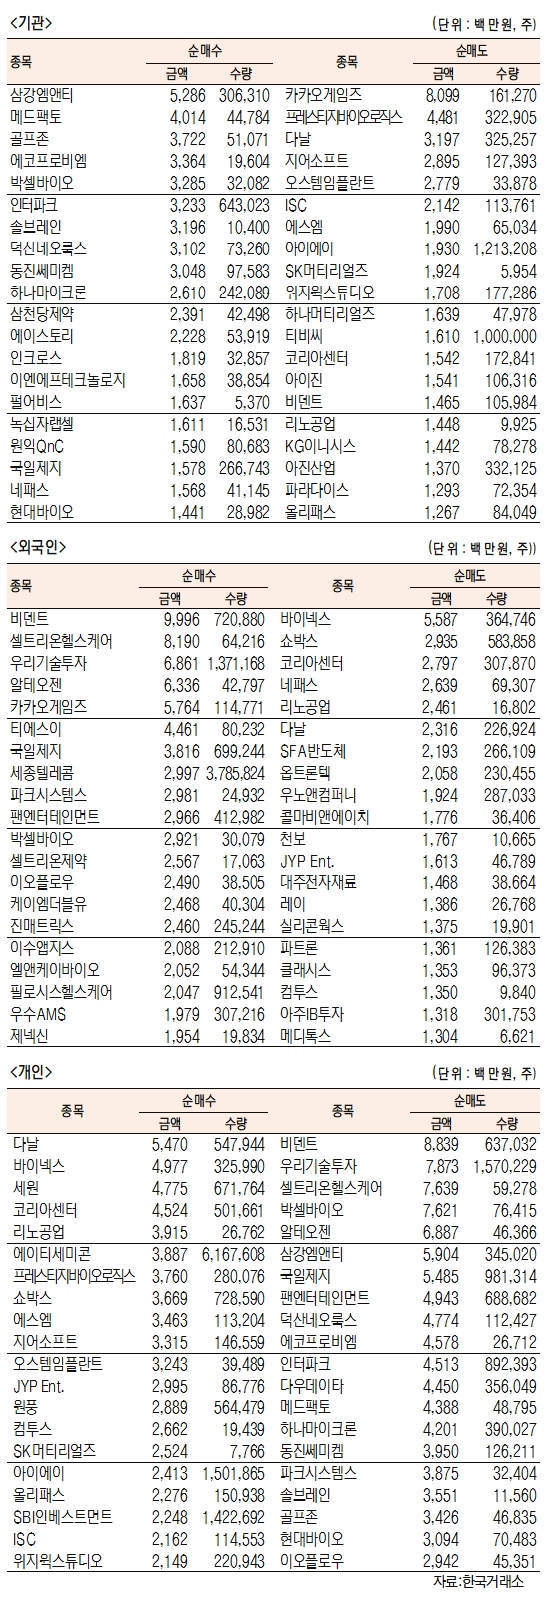 [표]코스닥 기관·외국인·개인 순매수·도 상위종목(3월 12일-최종치)